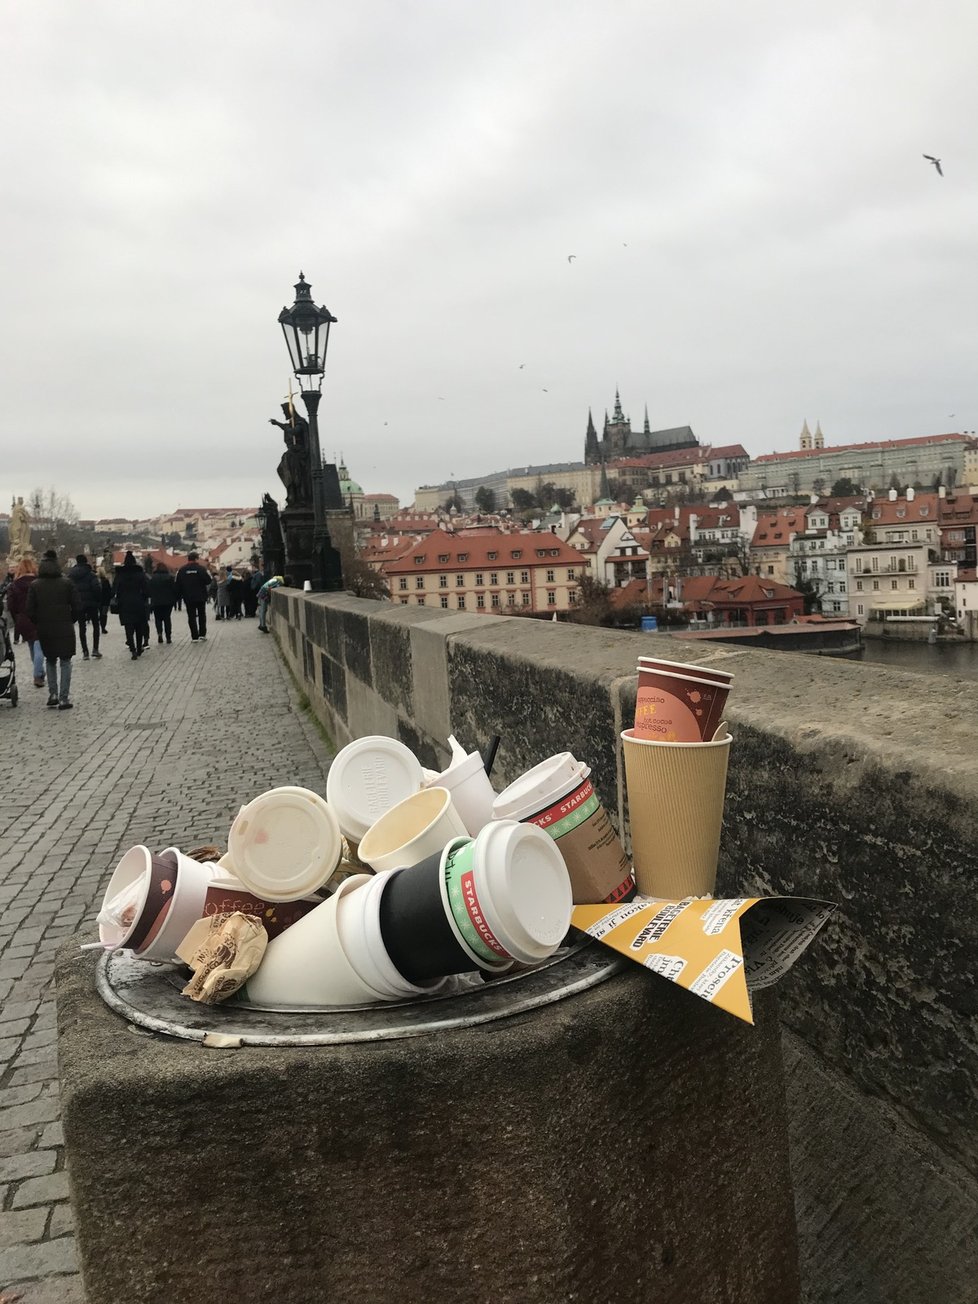 Pražané se v neděli 22. listopadu nedrželi doma a shlukovali se v centru. Podle redaktora Blesk.cz popíjeli kafe, svařák a jedli. Zůstaly po nich plné koše a odpadky na zemi.